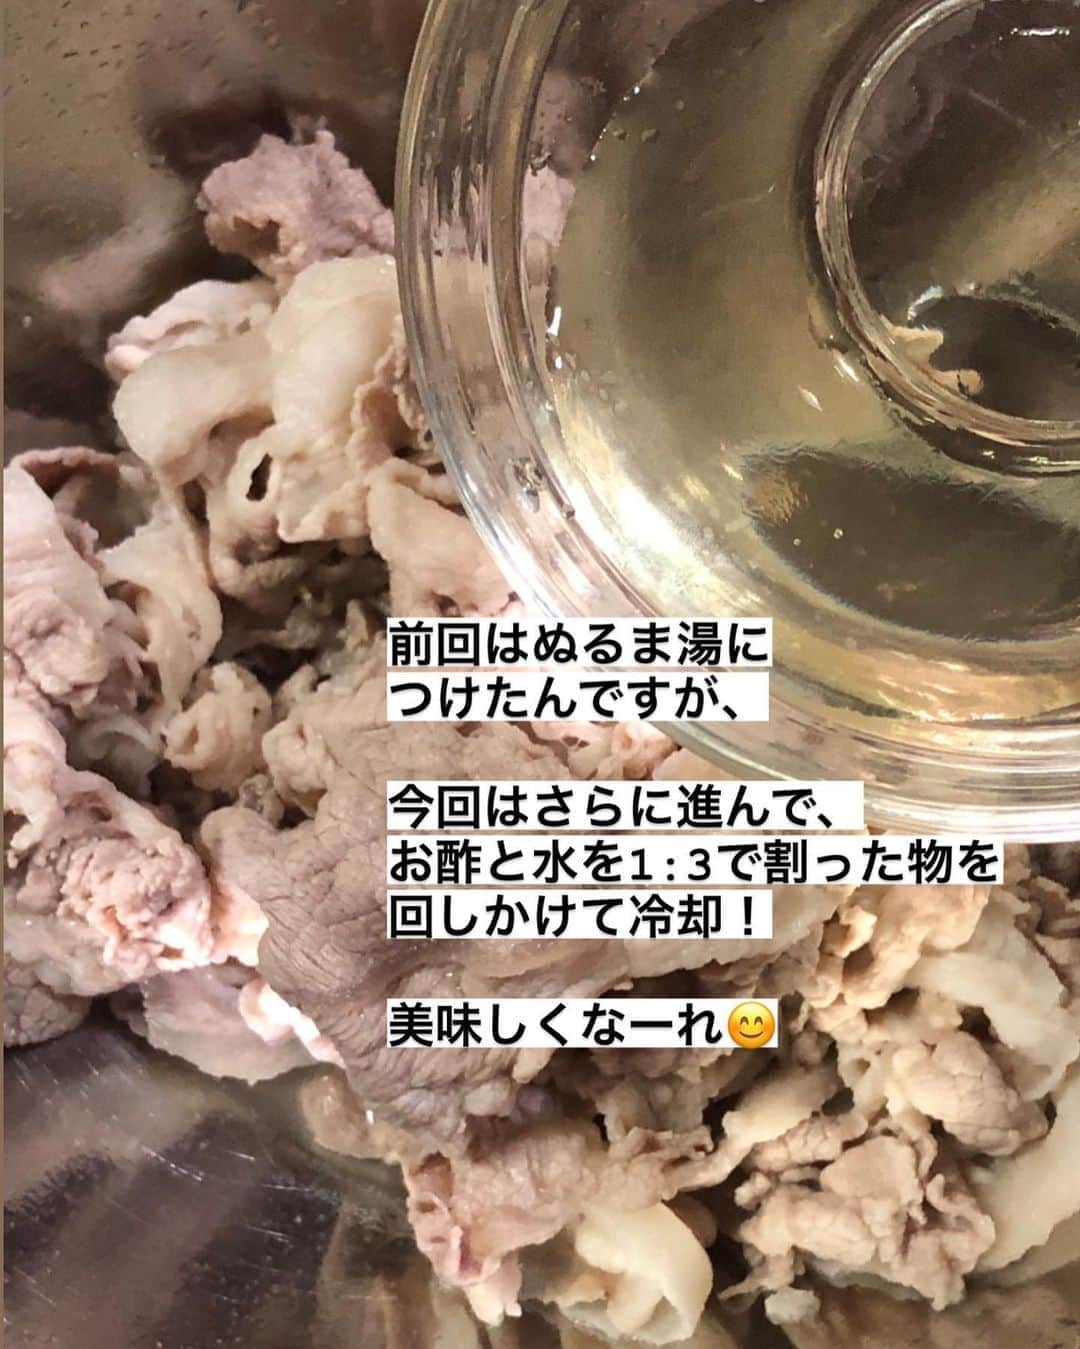 utoshさんのインスタグラム写真 - (utoshInstagram)「【カナダポーク🇨🇦🥩プレゼント企画！】﻿ バルサミコ酢でナスの冷しゃぶ！﻿ ﻿ ーーーーー﻿ ﻿ こんにちは！💁🏻﻿ ﻿ 最近投稿している僕の冷しゃぶが大好評でして…﻿ ﻿ なんと今回、カナダポークさまのご好意で、明日のインスタLIVEでカナダポークを使った2種類の冷しゃぶを作り、ライブ後、カナダポークさんのアカウント @canadapork_japan をフォローの上、カナダポークさんのアカウントに投稿される僕の料理写真にどちらが食べたいかをコメントしてくださった方の中から抽選で10名の方にカナダポークを1.5kgプレゼントしちゃおう企画をさせていただくことになりました！👏🏻👏🏻👏🏻🎉﻿ ﻿ ーーー﻿ ﻿ utoshさん考案！﻿ カナダポークを使った冷しゃぶアレンジ﻿ ﻿ どっちが食べたい？﻿ コメントで教えてね♪﻿ ﻿ 抽選で10名様にカナダポークのしゃぶしゃぶ肉1.5キロをプレゼント！﻿ ﻿ ーーー﻿ ﻿ というですね、可愛らしいタイトルをつけて頂いたんですが😂🔨﻿ ﻿ 明日のインスタLIVEで作るのは、先日投稿した「粒マスタード酢のブロッコリー冷しゃぶ」と、この「バルサミコ酢のナスの冷しゃぶ」です！﻿ ﻿ まとめると﻿ ﻿ ①明日、僕のインスタライブを見る﻿ ﻿ ②カナダポークさんのアカウント @canadapork_japan をフォロー﻿ ﻿ ③カナダポークさんのアカウントに投稿されるキャンペーン画像に、LIVEで作った冷しゃぶのうち「どっちが食べたいか」をコメント﻿ ﻿ →抽選で10名の方にカナダポーク 1.5キロプレゼント！﻿ ﻿ という、夢のような企画です！﻿ ﻿ ぜひ参加してみたいという方はこの投稿によコメントください！﻿ ﻿ ぜひぜひお待ちしております！😄﻿ ﻿ ーーーーーー✂︎ー﻿ ﻿ ﻿ それから、プレゼント企画をやる前に知っておいて欲しい事があります！﻿ ﻿ それは〈カナダポークの安心、安全について〉です。﻿ ﻿ ﻿ カナダ産豚肉（カナダポーク）は安心安全な7つの約束があるんです。﻿ ﻿ 実は、今現在、日本に入ってきているカナダ産豚肉は、いわゆる成長ホルモンを使っていません。この部分で外国産のお肉を買わないという人も安心して食べることができる豚肉になっています。﻿ ﻿ これは僕たちの安全でもありますが、豚たちも体の負担が少ないやさしい決まり。﻿ 肉として扱うのではなくて、きちんと生き物として行き届いた飼育をしていこうというアニマルケアの一つでもあります。﻿ ﻿ ﻿ こういった約束はカナダの畜産農家産たちが自分たちで動いて作った国の企画なんですって。﻿ だから安心して食べることのできるお肉になってます。﻿ ﻿ ー﻿ ﻿ 今、世界はサスティナブルの方向に大きく動いています。﻿ 日本も取り残されないように頑張らないといけないですね。﻿ ﻿ ﻿ ー✂︎ー﻿ ﻿ ﻿ ✔️〈このレシピのポイント〉﻿ ﻿ ・茹でる時に弱火にしてコップ一杯の水を入れて温度を下げてから茹でると柔らかく茹でることができます。﻿ ﻿ ・茹でたらザルにあげて、冷水につけるのではなく、少量の酢水でさっと絡めてあげるだけでOK。﻿ ﻿ ﻿ ﻿ レシピはこちら↓﻿ ＿＿＿＿＿﻿ ﻿ バルサミコ酢でナスの冷しゃぶ（2人分）﻿ ﻿ 【材料】﻿ 〈カナダポーク〉﻿ 薄切り肉 200g﻿ ナス 2本﻿ 大葉 2枚﻿ ﻿ A（冷しゃぶ用）﻿ お酢　大さじ1﻿ 水　大さじ3﻿ ﻿ B（ドレッシング）﻿ バルサミコ酢　大さじ1﻿ メープルシロップ 小さじ1﻿ （たまに甘いバルサミコ酢があるので、そういう時は入れなくていい） オリーブオイル 大さじ1﻿ 塩 小さじ1/4程度﻿ ﻿ 〈トッピング用〉﻿ 白ごま　適量﻿ ﻿ ﻿ 【作り方】﻿ （1）（1）ナスを縦に8等分に切り、600Wのレンジで4分加熱する。大葉を千切りにする。Aのお酢と水を合わせておく。Bのドレッシングを作っておく。﻿ ﻿ （2）お湯を沸かした鍋にコップ一杯の水を入れ、温度を下げて豚肉を入れ、ゆっくり豚肉を茹で、とりだしたらザルにあげ、Aを回しかけ冷ます。﻿ ﻿ （3）お皿に1のナスと2の冷しゃぶを盛りつけ、大葉と白ごまを振り、Bのドレッシングをまわしかけたら完成。﻿ ﻿ ﻿ ＿＿＿＿＿﻿ ﻿ ぜひ作ってくださいね！﻿ No local No food おいしく楽しく！﻿ ﻿ ﻿ #冷しゃぶ #カナダポーク #カナダポークでおいしくなぁれ﻿ #スタートUPレシピ #スタートアップレシピ #ややはつレシピ #在宅楽飯﻿ ﻿ #おうちごはん #レシピ #時短料理 #簡単レシピ #献立 #お家ご飯 #フーディーテーブル﻿ #japanesefoods #やさしい飯」8月26日 10時50分 - utosh